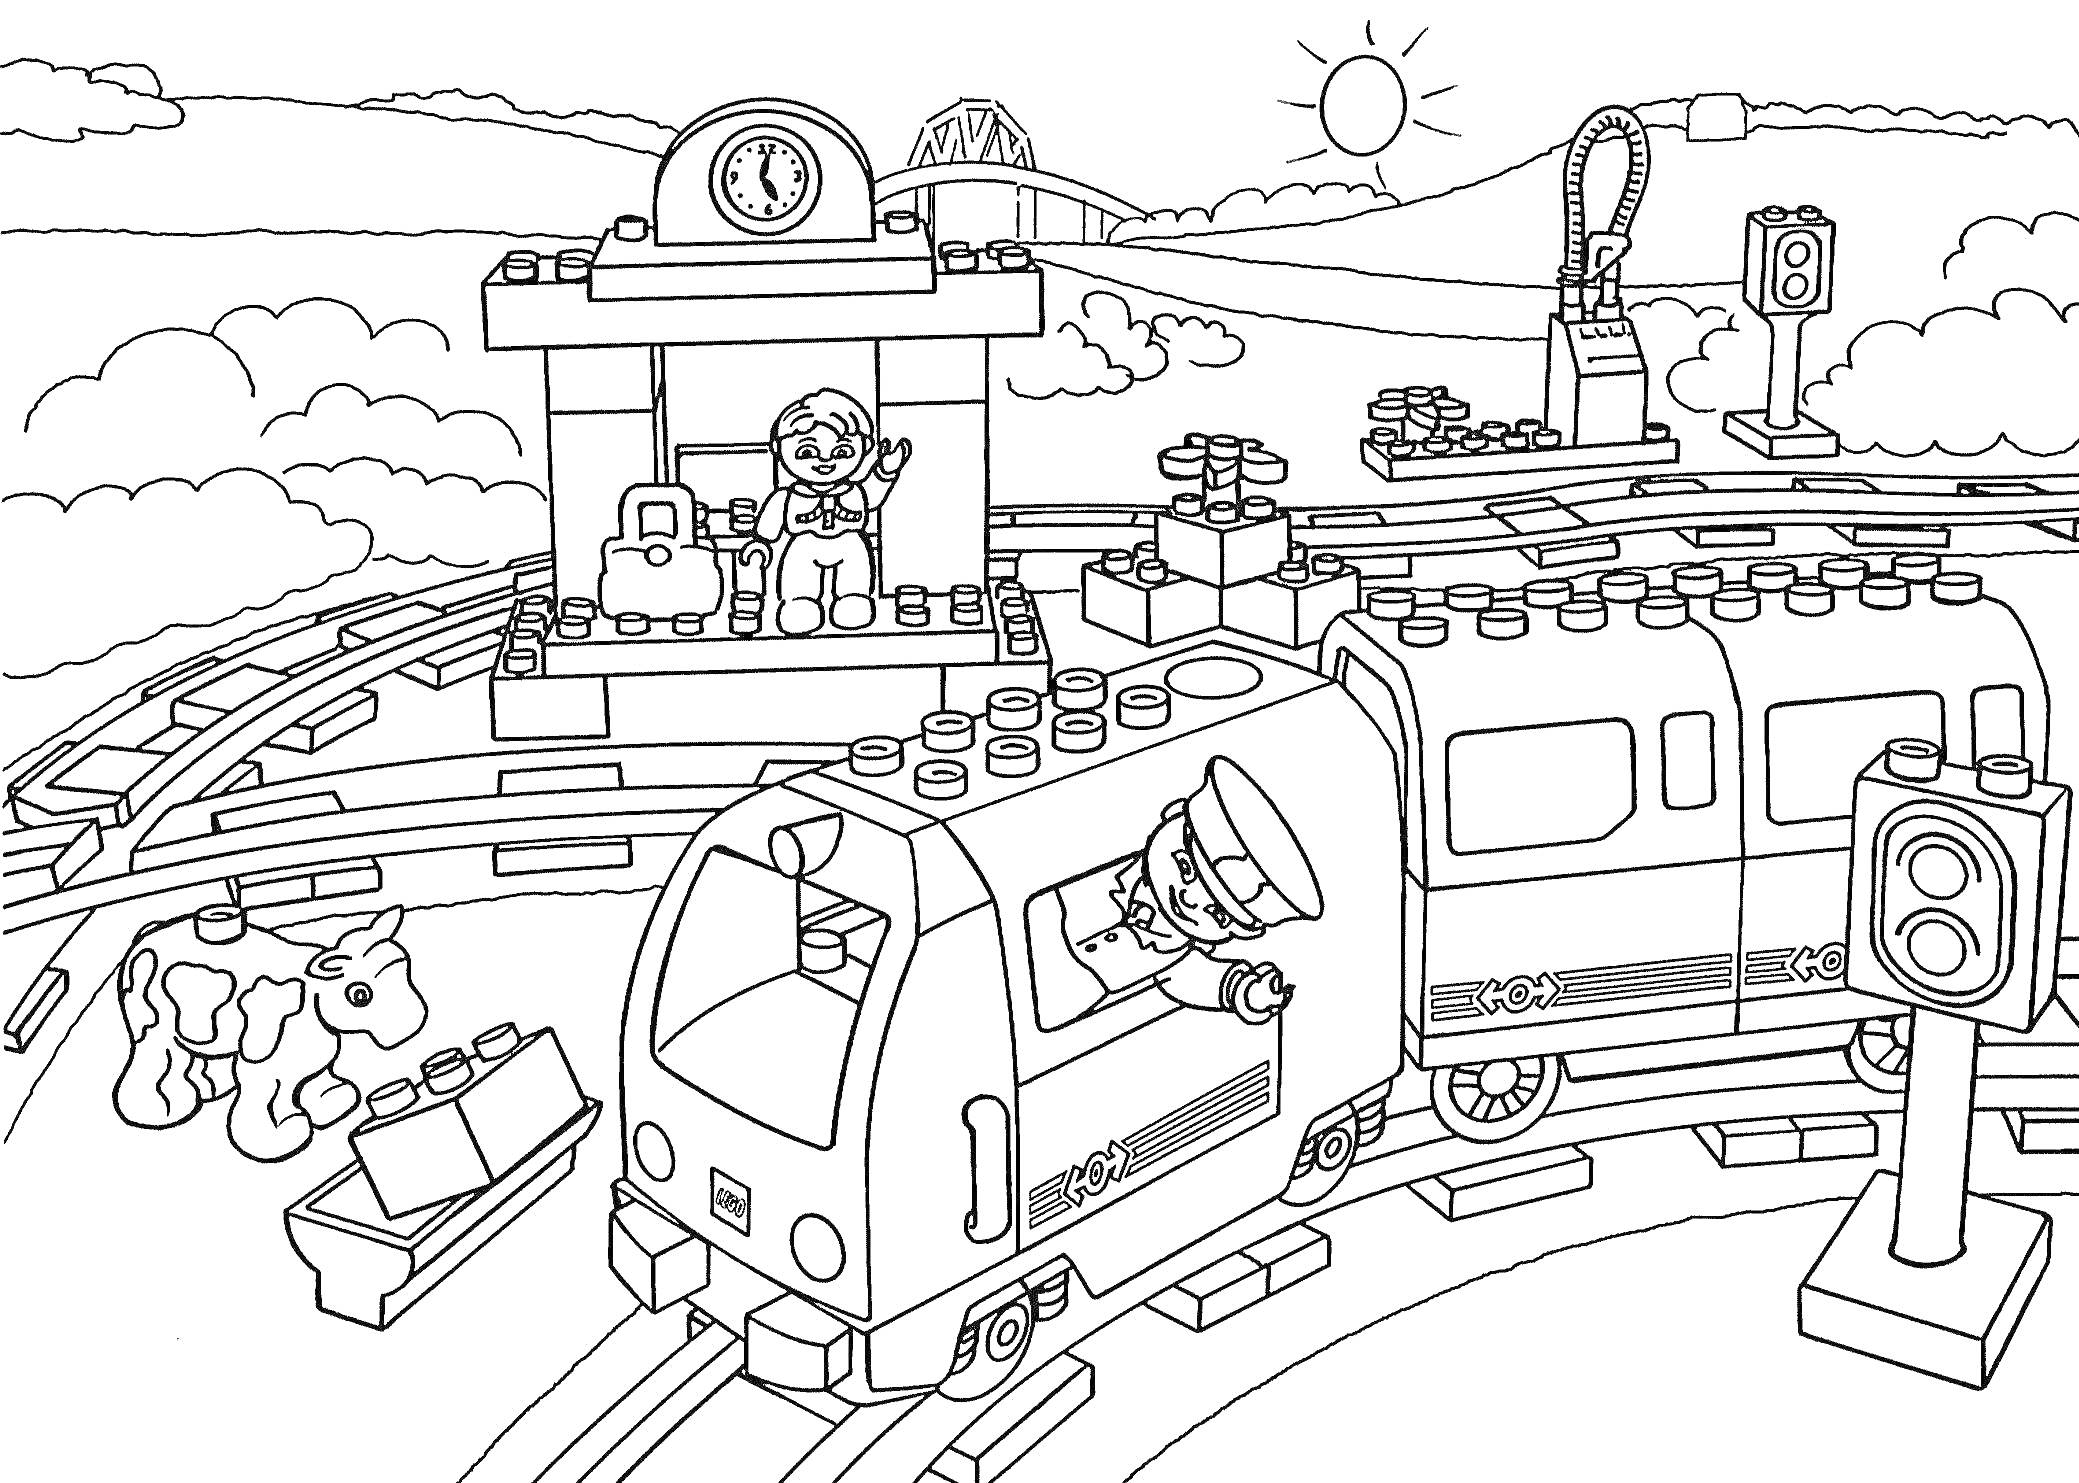 Раскраска Железнодорожная станция с поездом и машинистом, маленькой станцией, пассажирами, коровой, светофором и сундуком